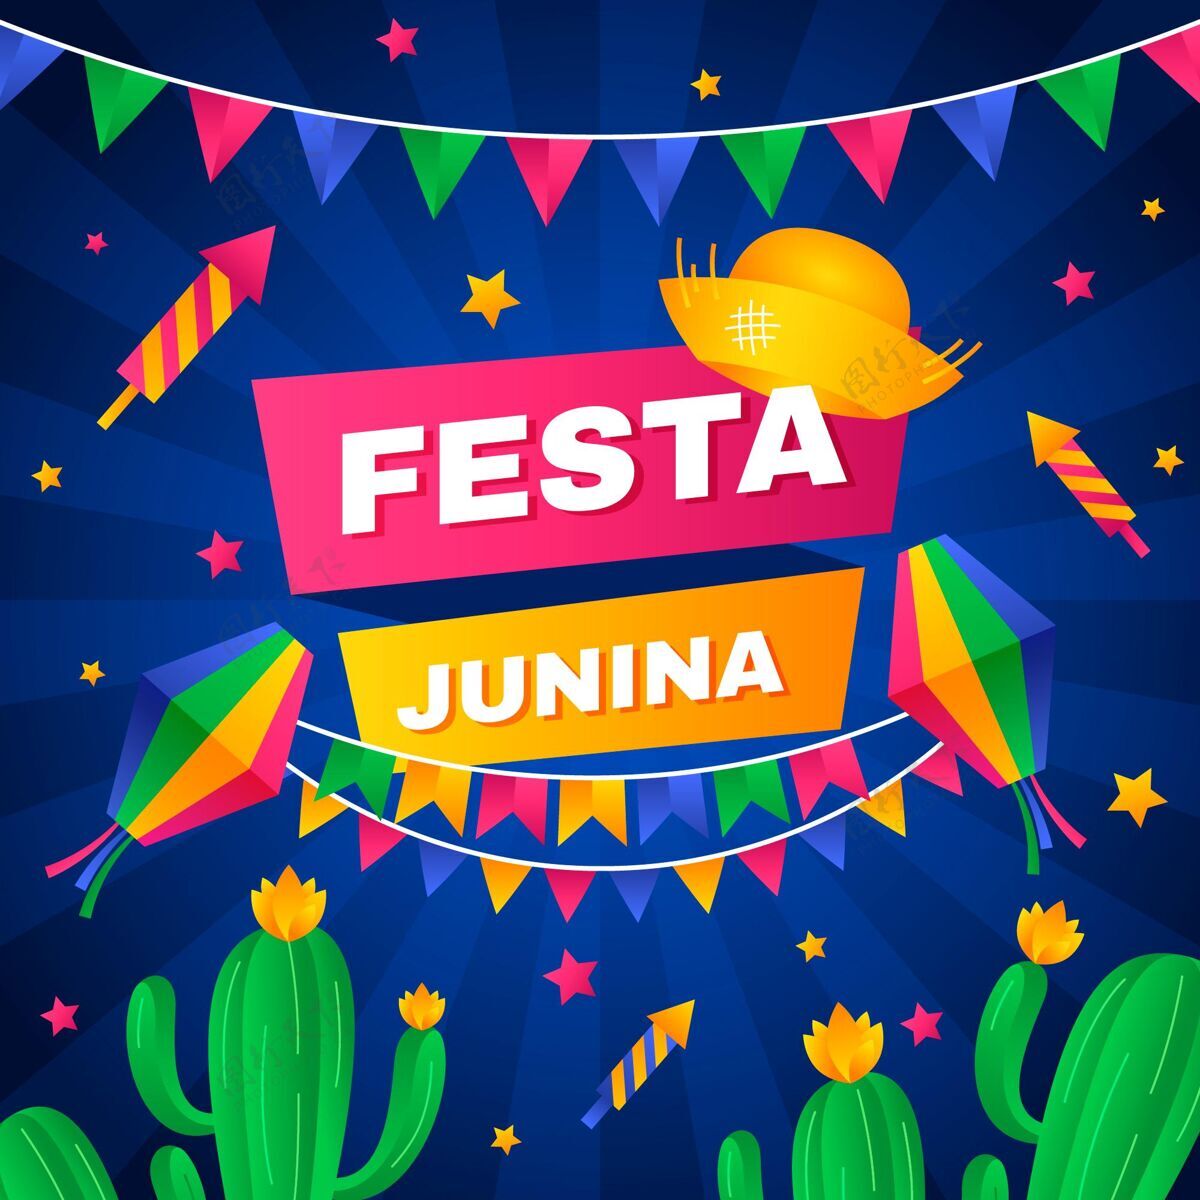 朱尼娜节这是朱尼娜的插图收获6月1日巴西